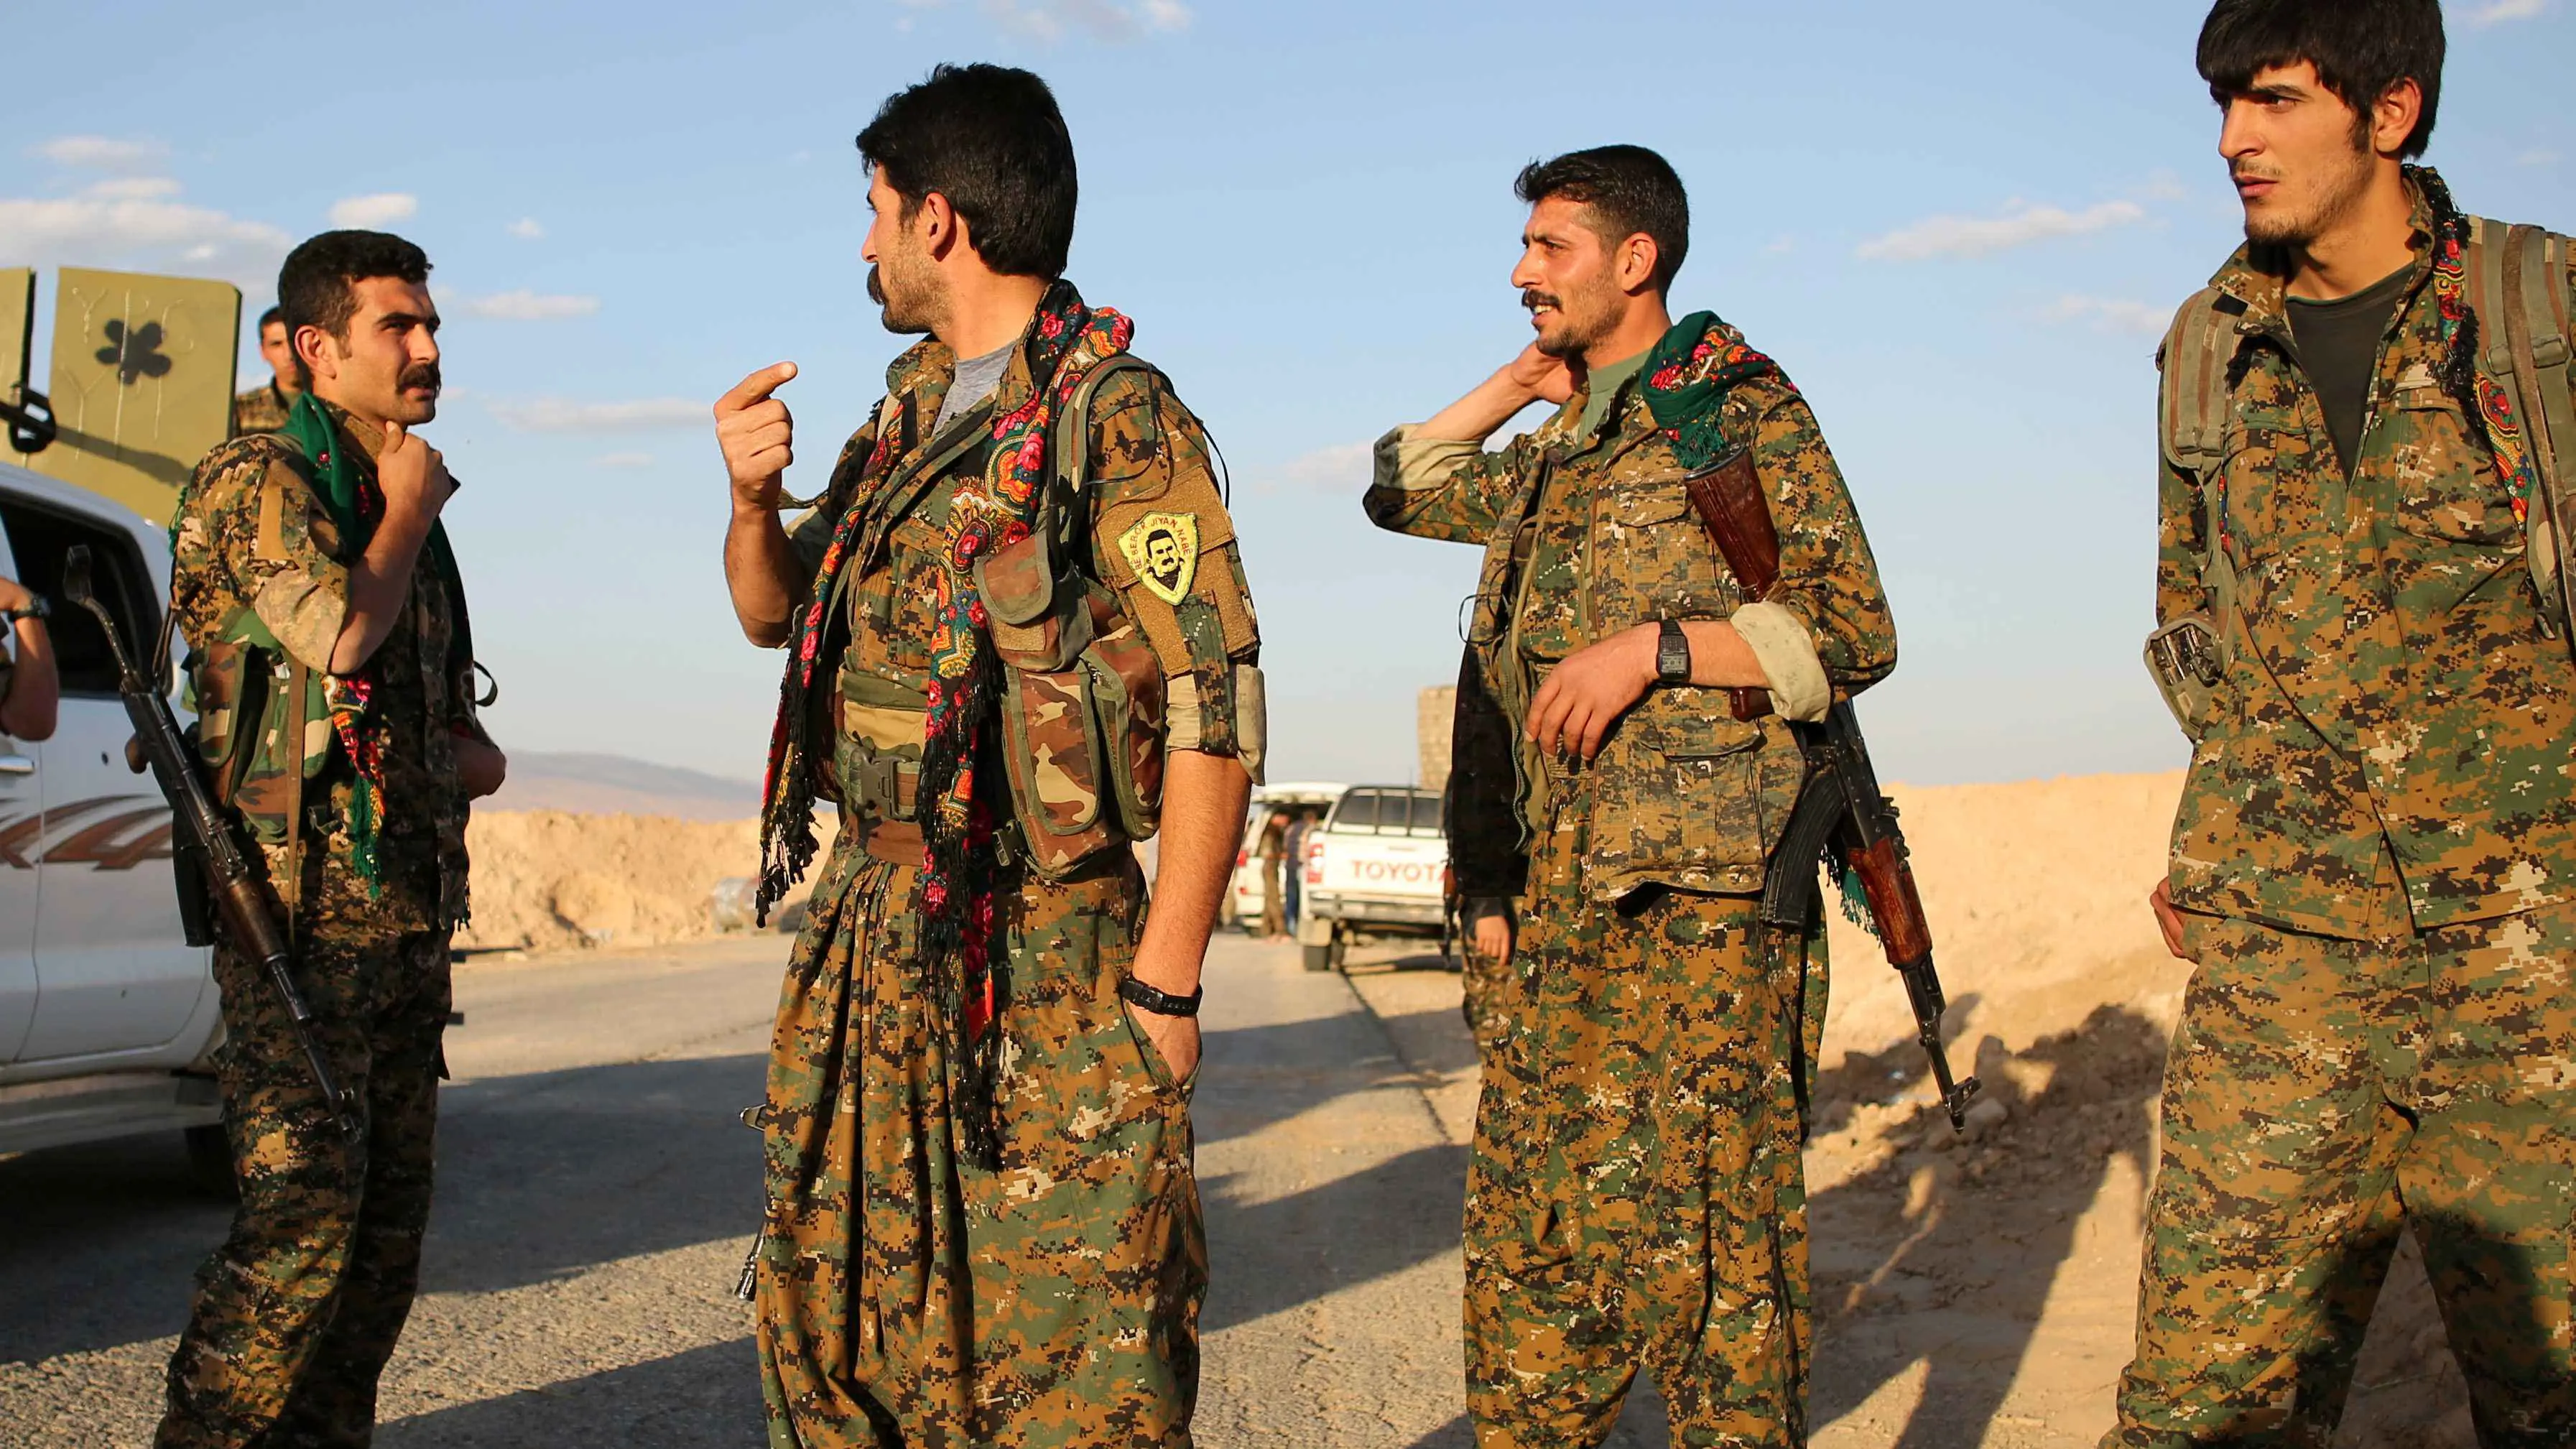 العراق يعتمد وصف "المحظور" لحزب العمال الكردستاني